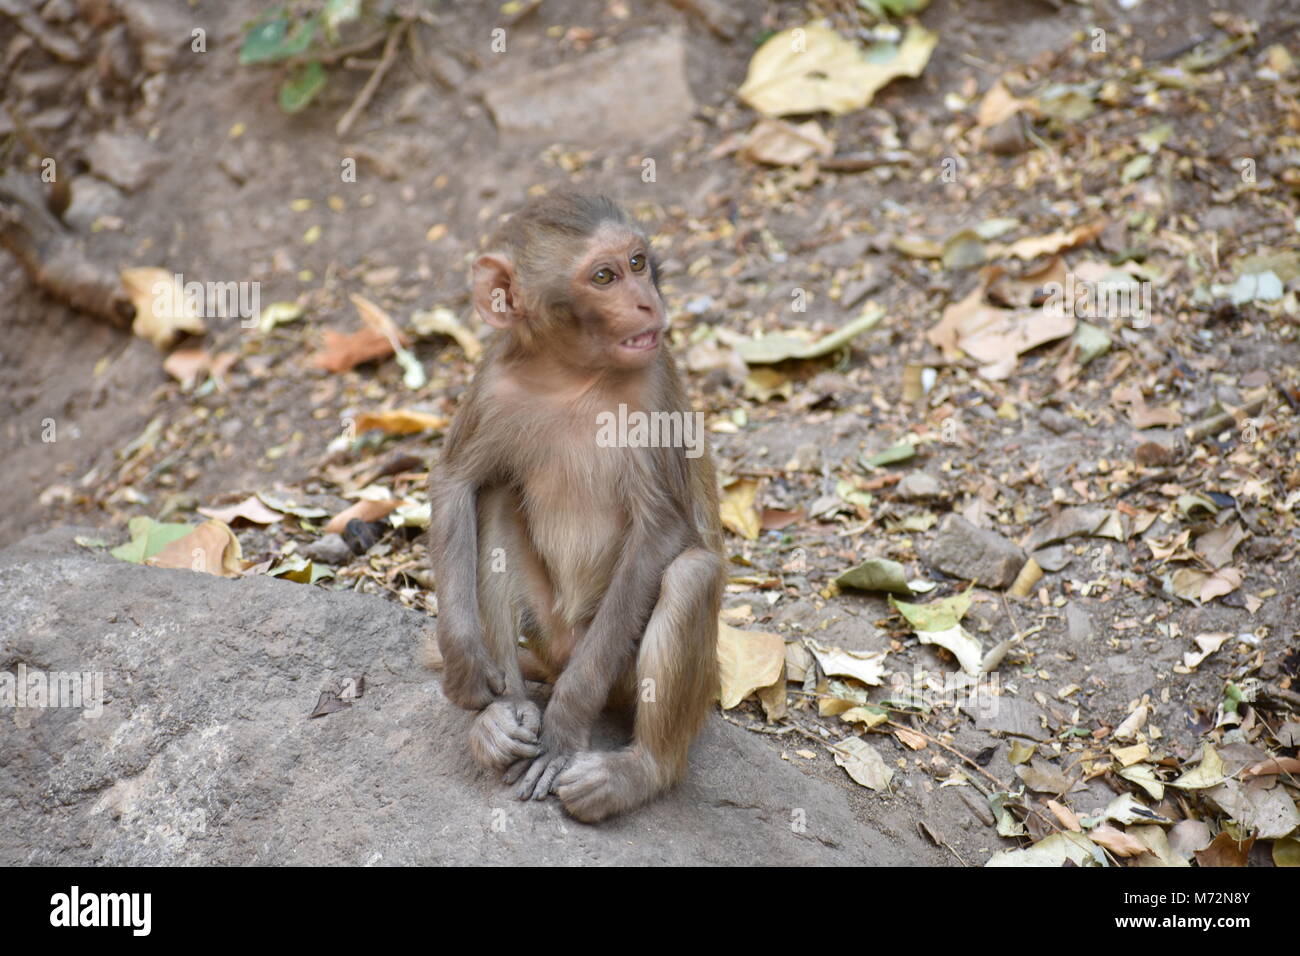 Magnifique photo de petit enfant singe assis sur une pierre et me tenir occupé lui-même par la pratique de l'activité petit comme manger certains aliments, voir autour de lui. Banque D'Images